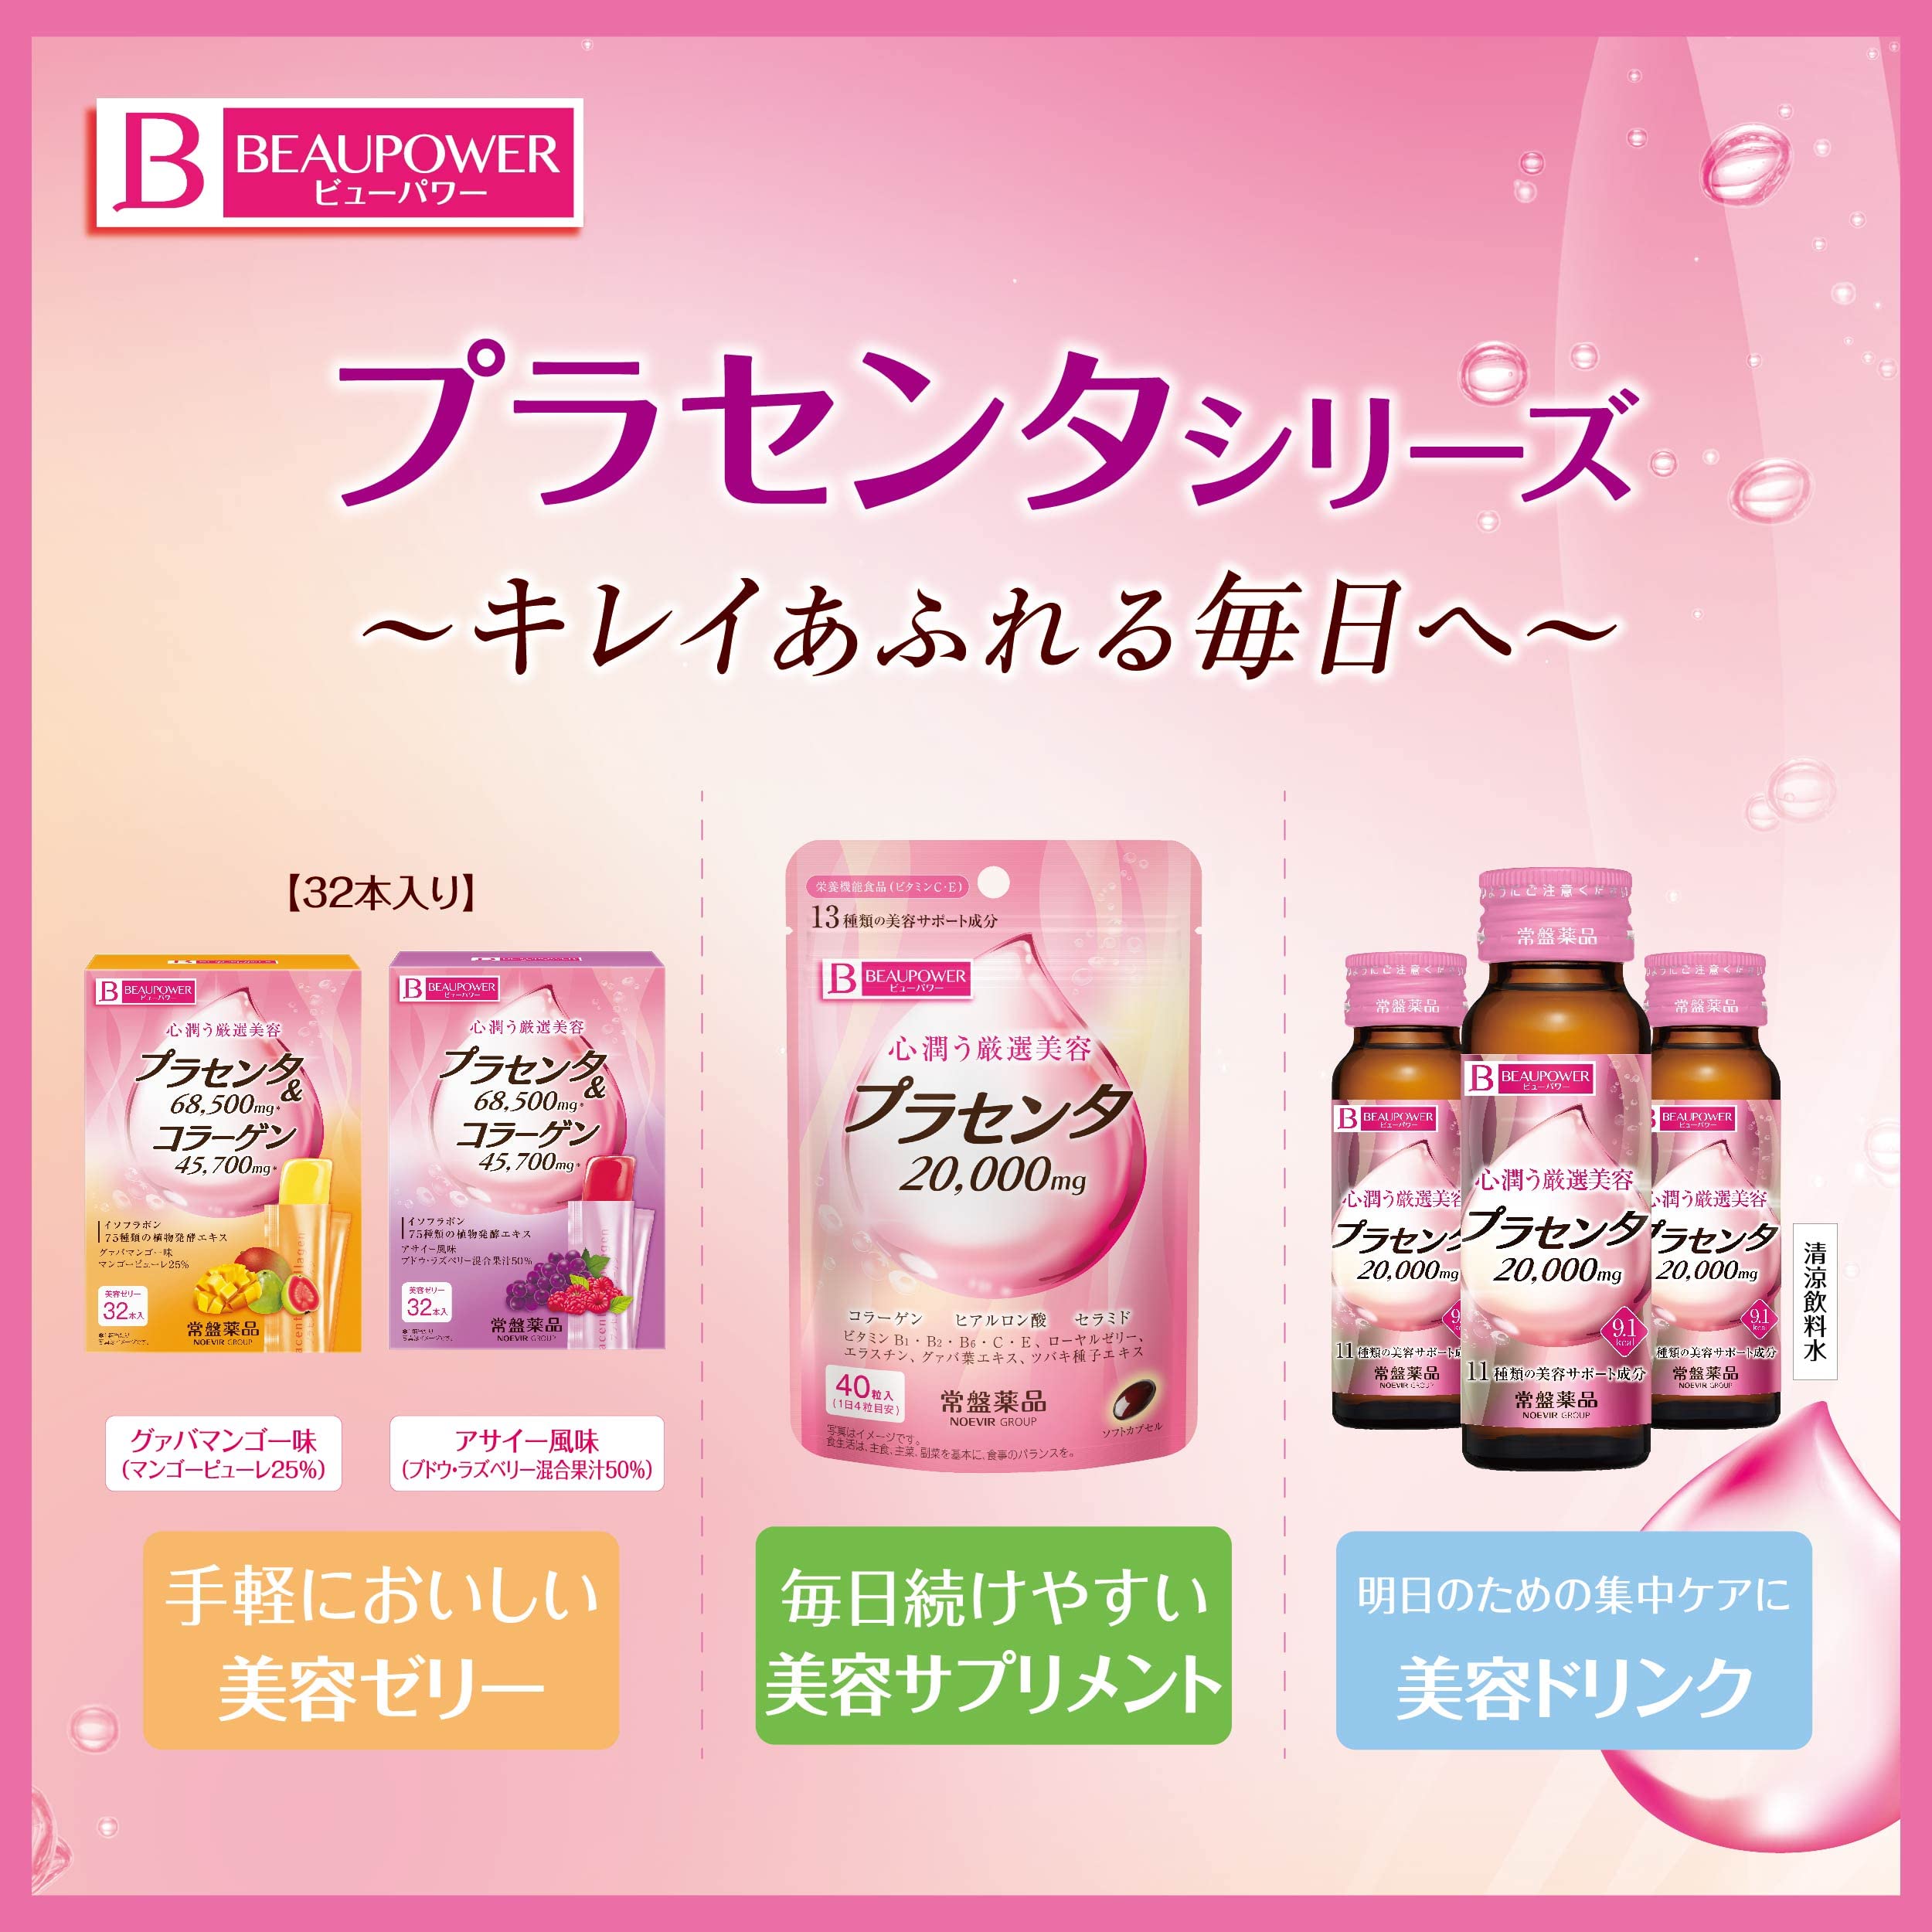 collagen beaupower placenta collagen jelly nhat ban